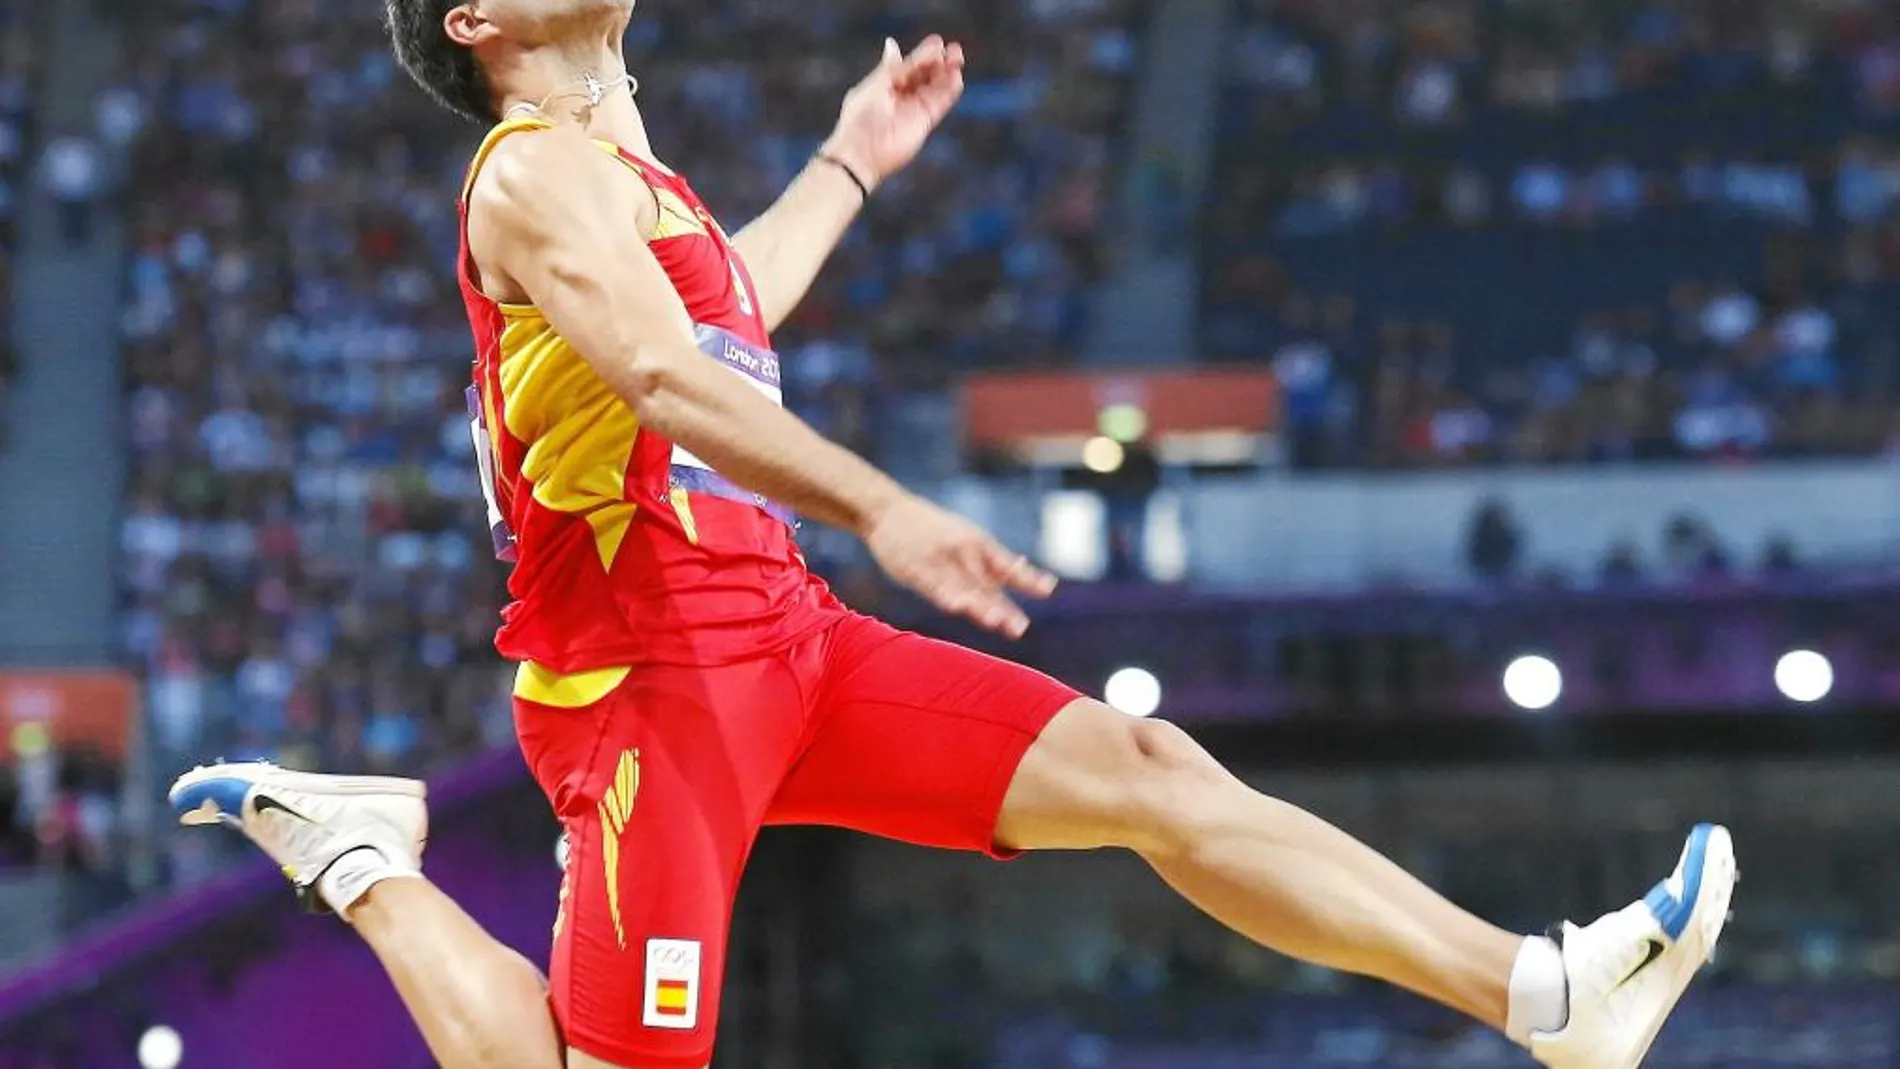 Eusebio Cáceres, en el salto en el que logró su mejor marca personal, 8,37